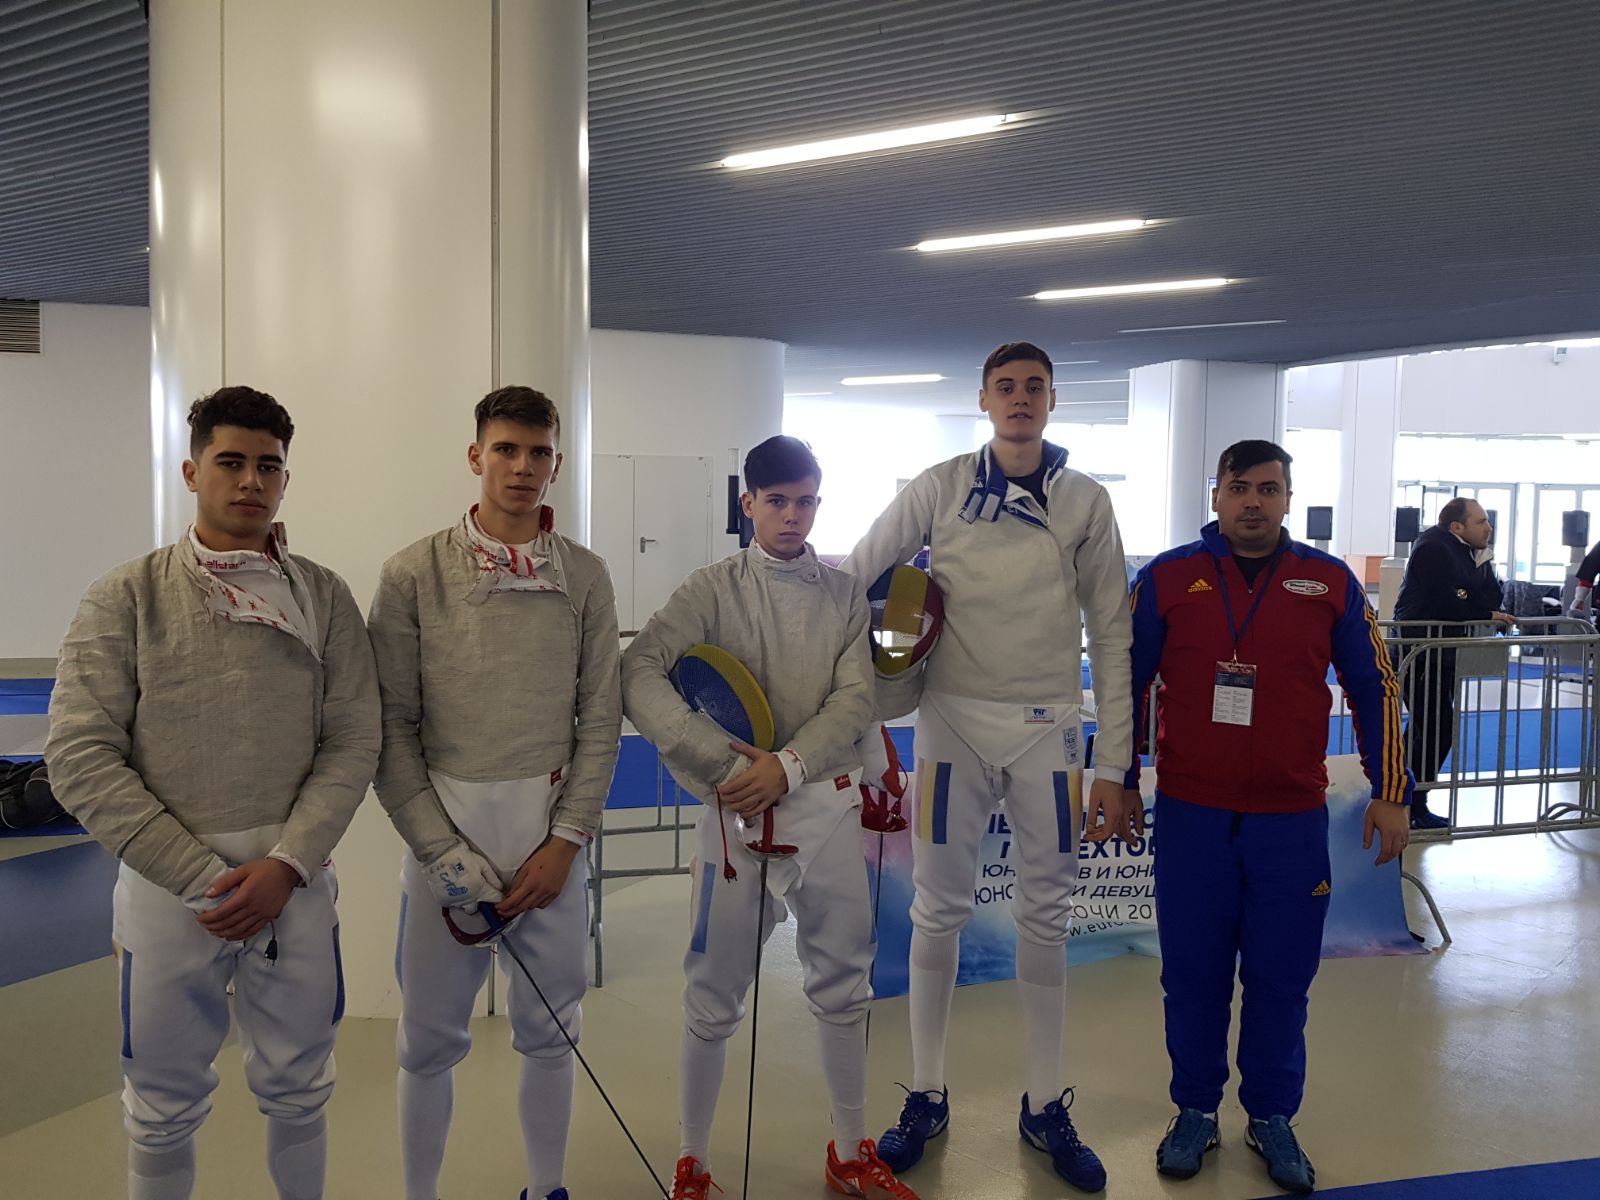 ACUM LIVE: Dragomir, Stănescu, Uraschi și Ailinca trag la Campionatul European de la Soci, în proba de sabie juniori masculin individual